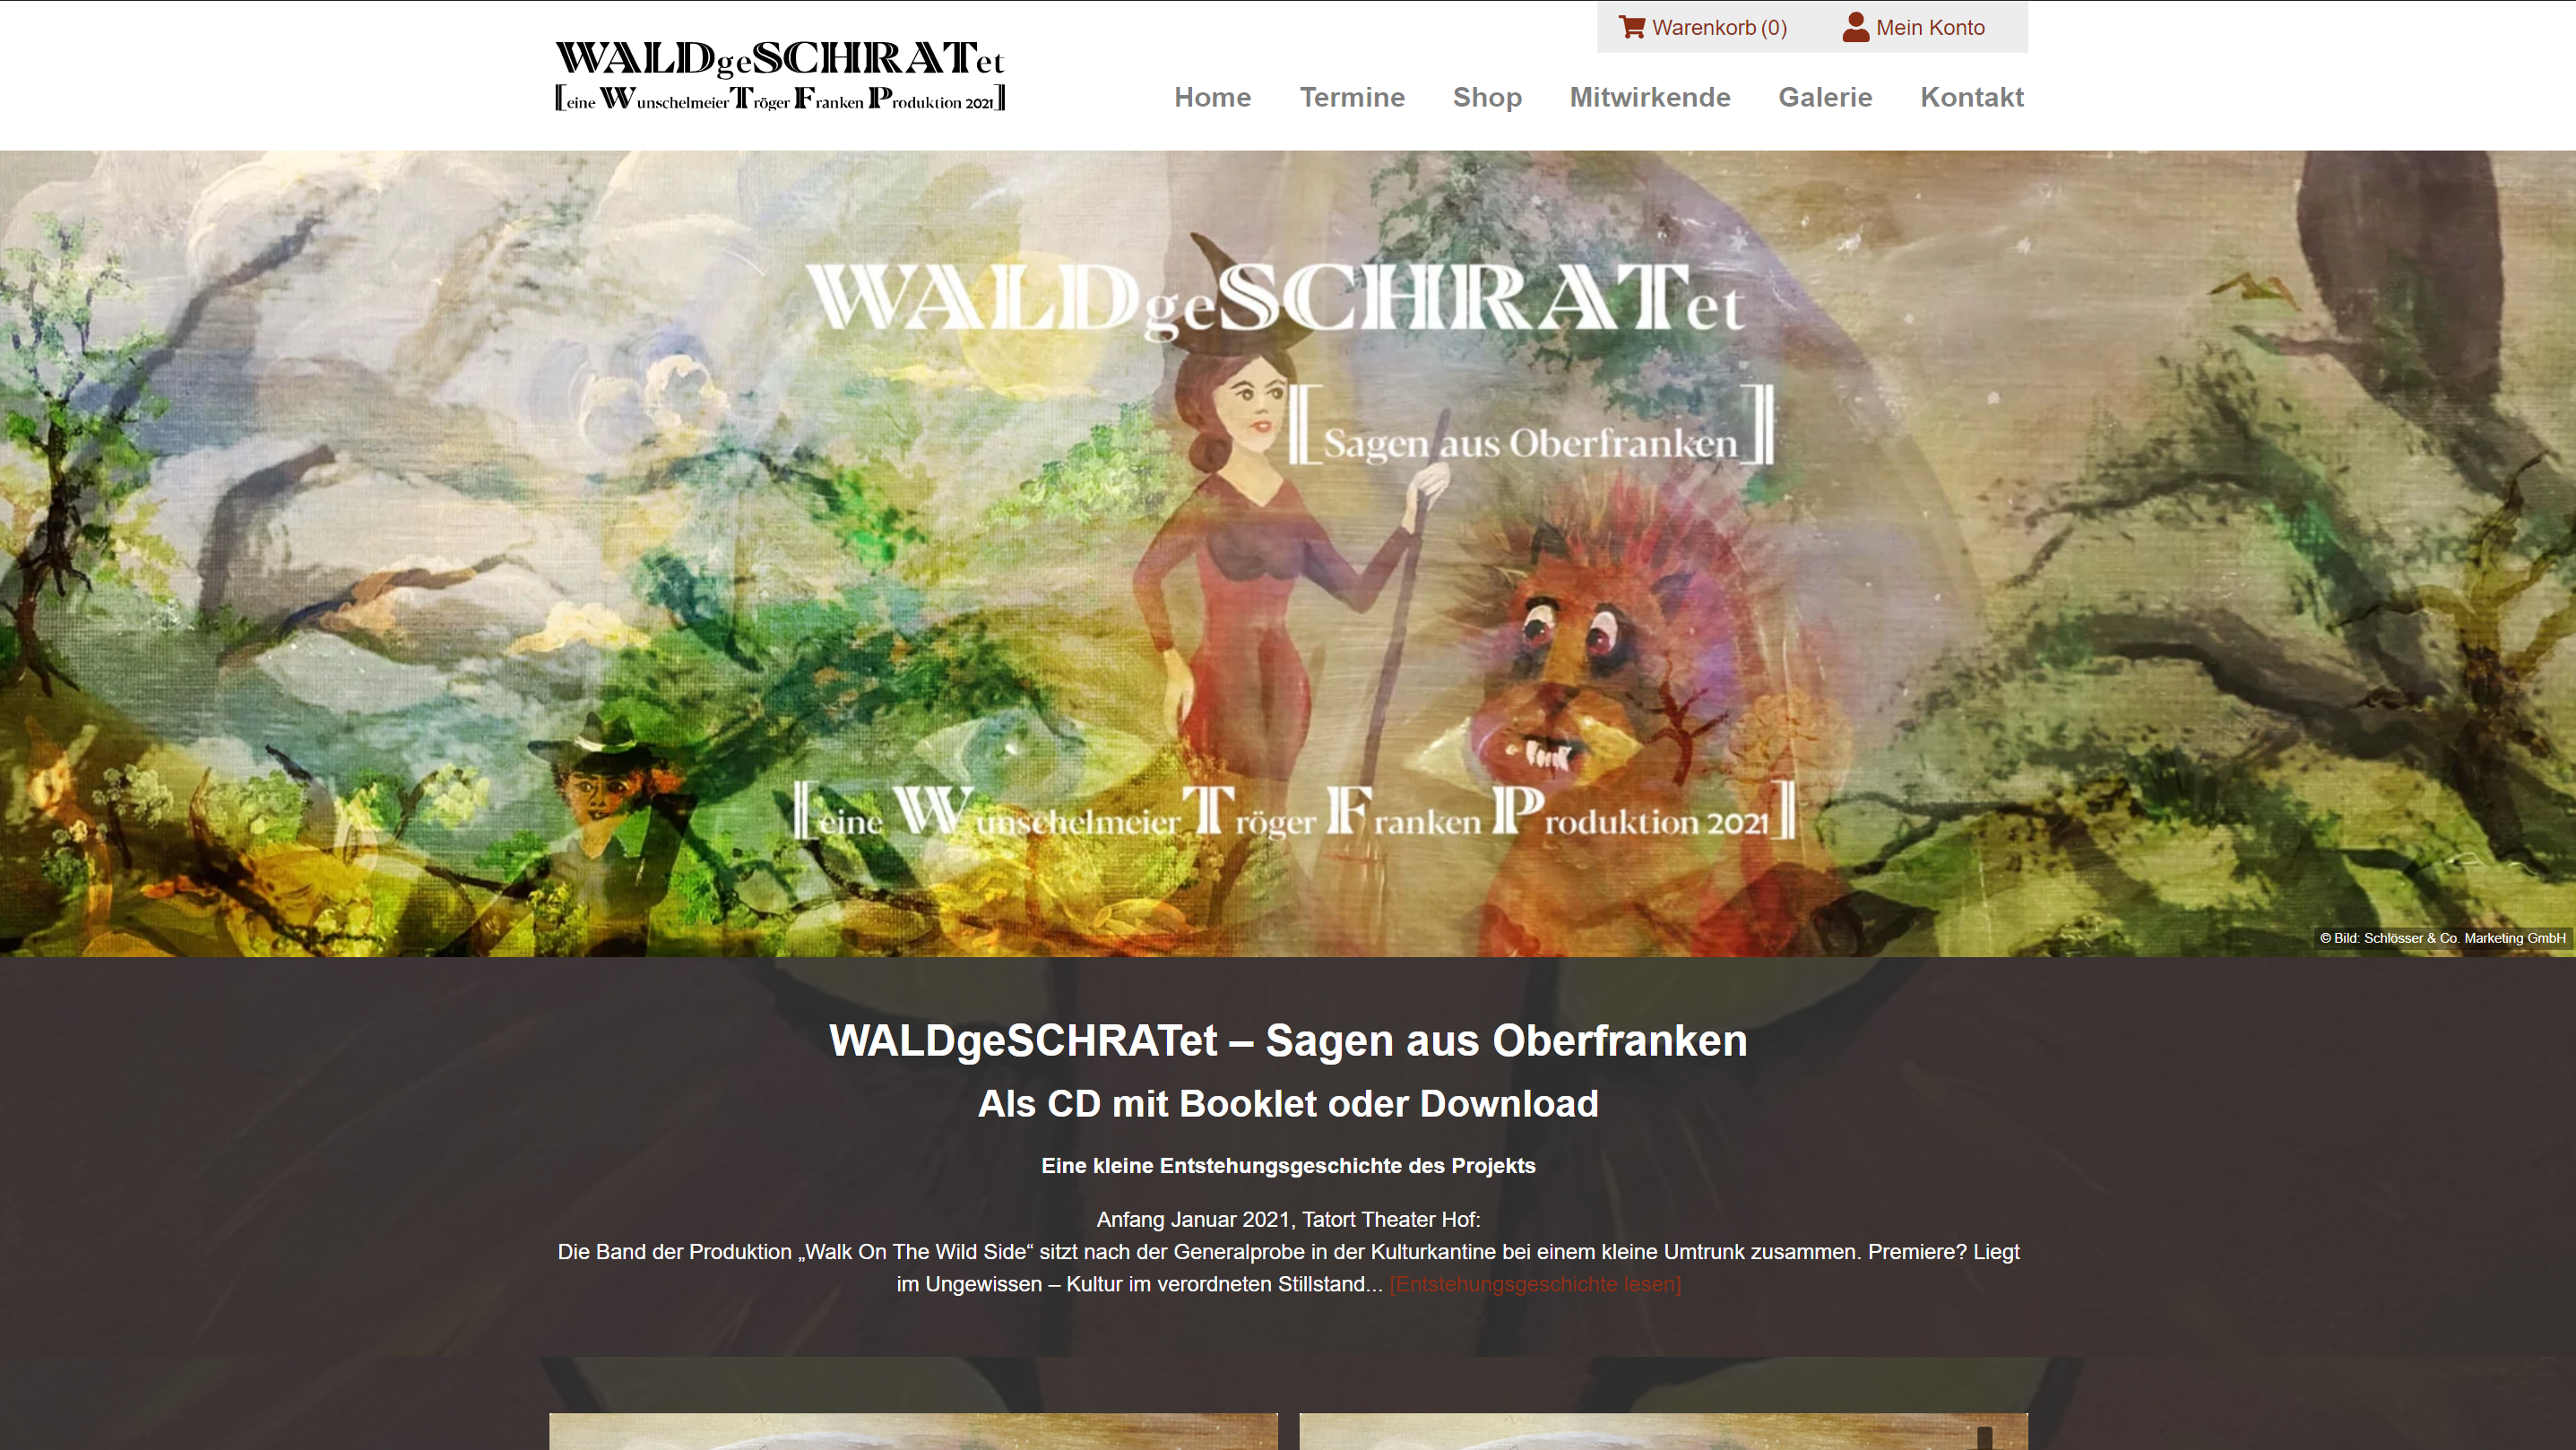 WALDgeSCHRATet - Startseite Onlineshop